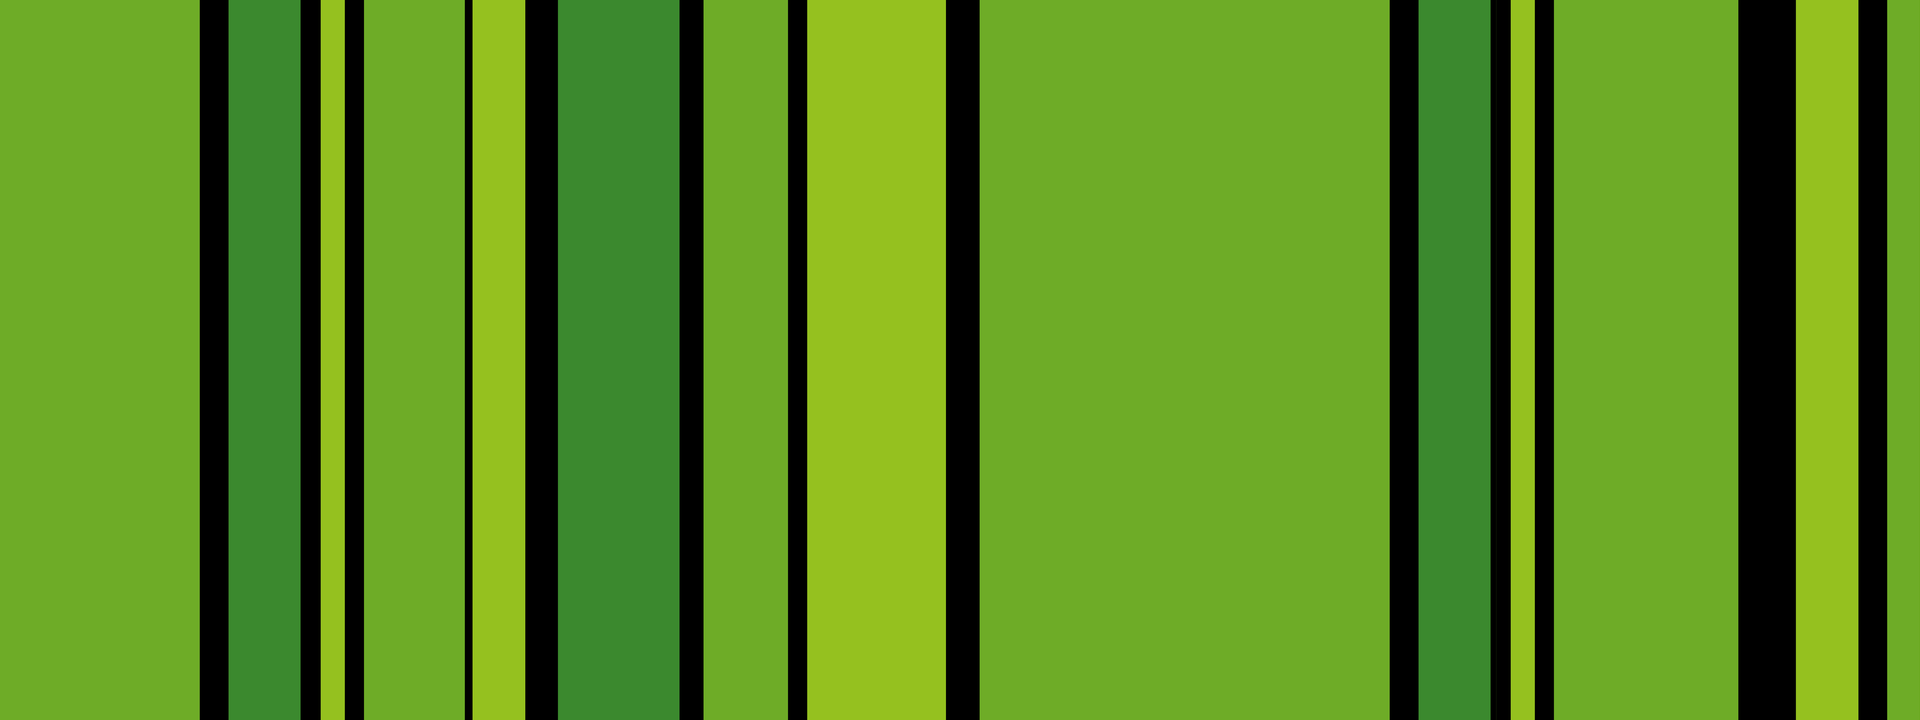 Vertikale Streifen in verschiedenen, hellen Grüntönen. Unterbrochen von unterschiedlich breiten schwarzen Linien.